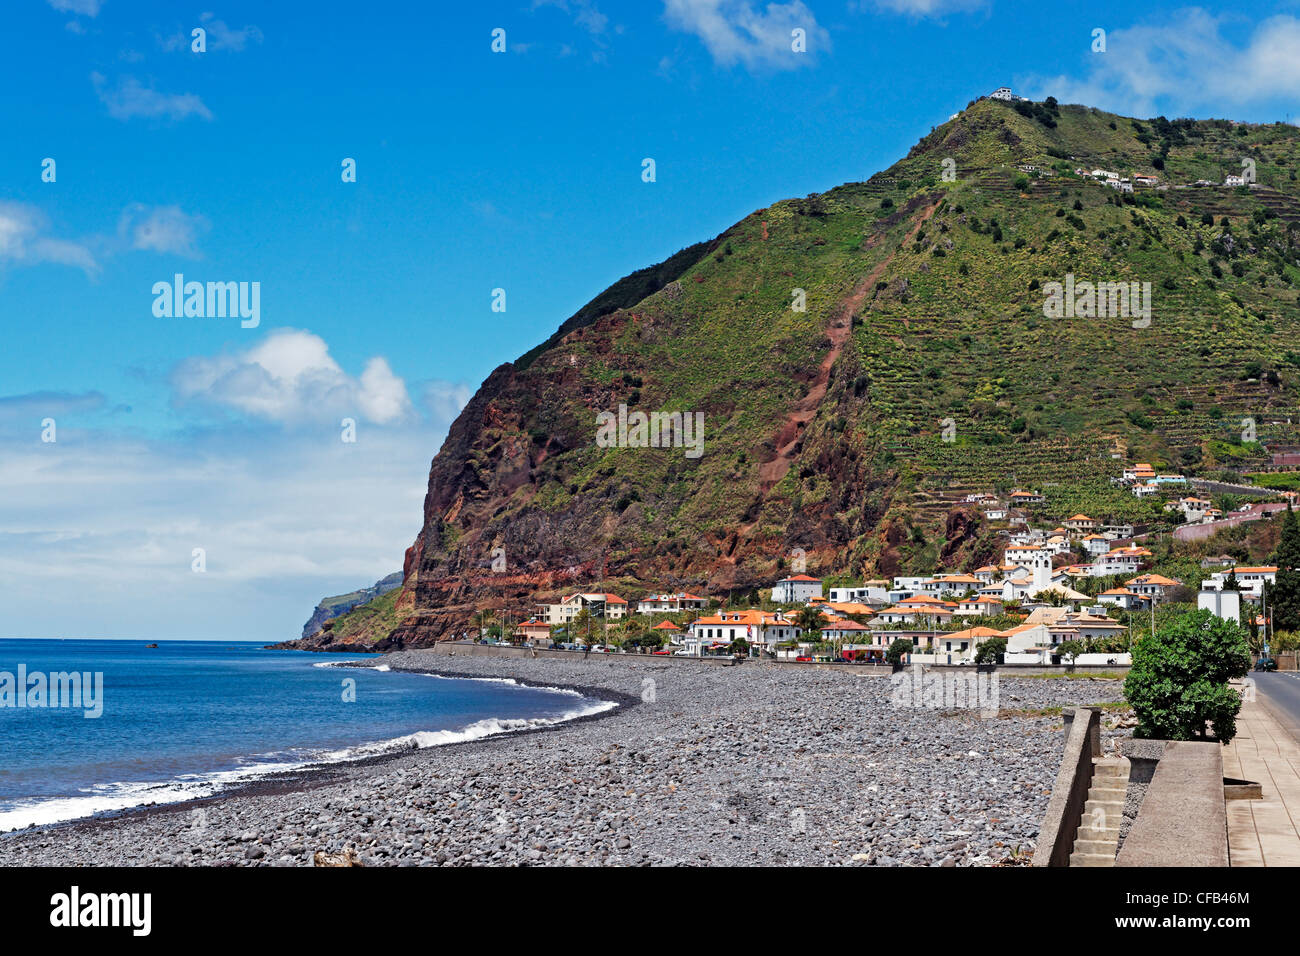 Europe, Portugal, Republica Portuguesa, Madeira, Madalena do Mar, Avenida 1o de Fevereiro, local view, gravel beach, roughly, bu Stock Photo